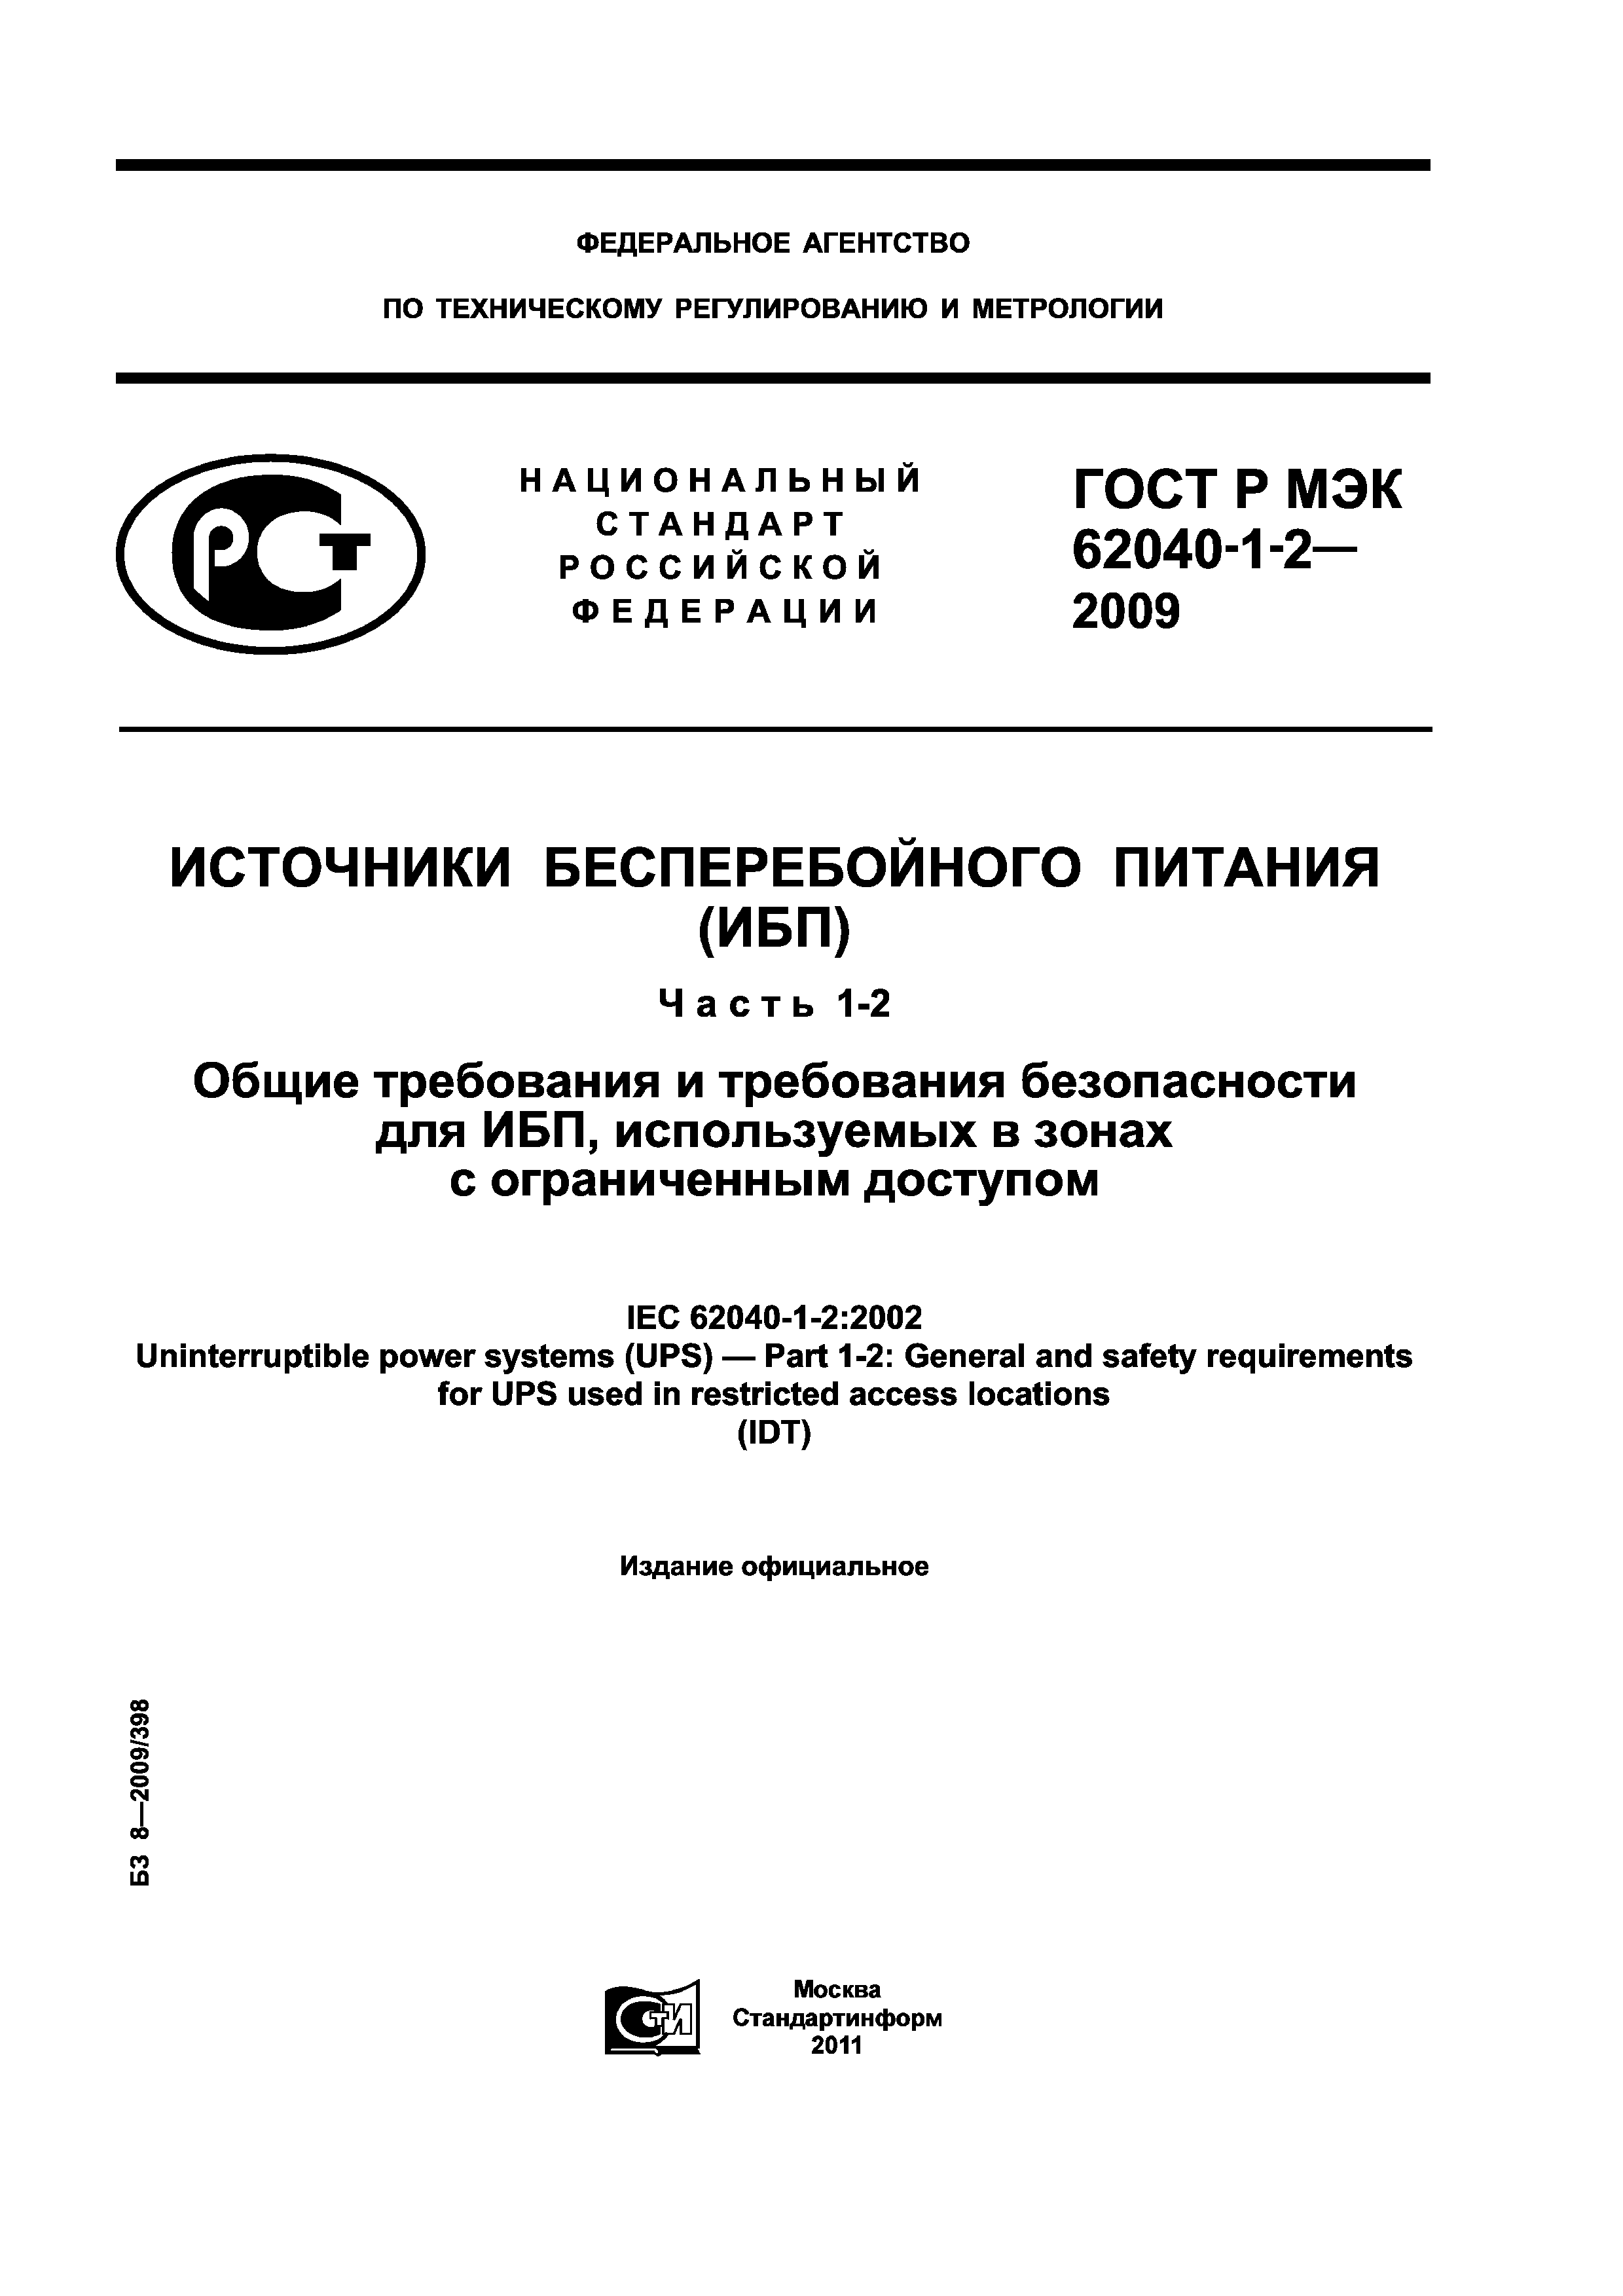 ГОСТ Р МЭК 62040-1-2-2009